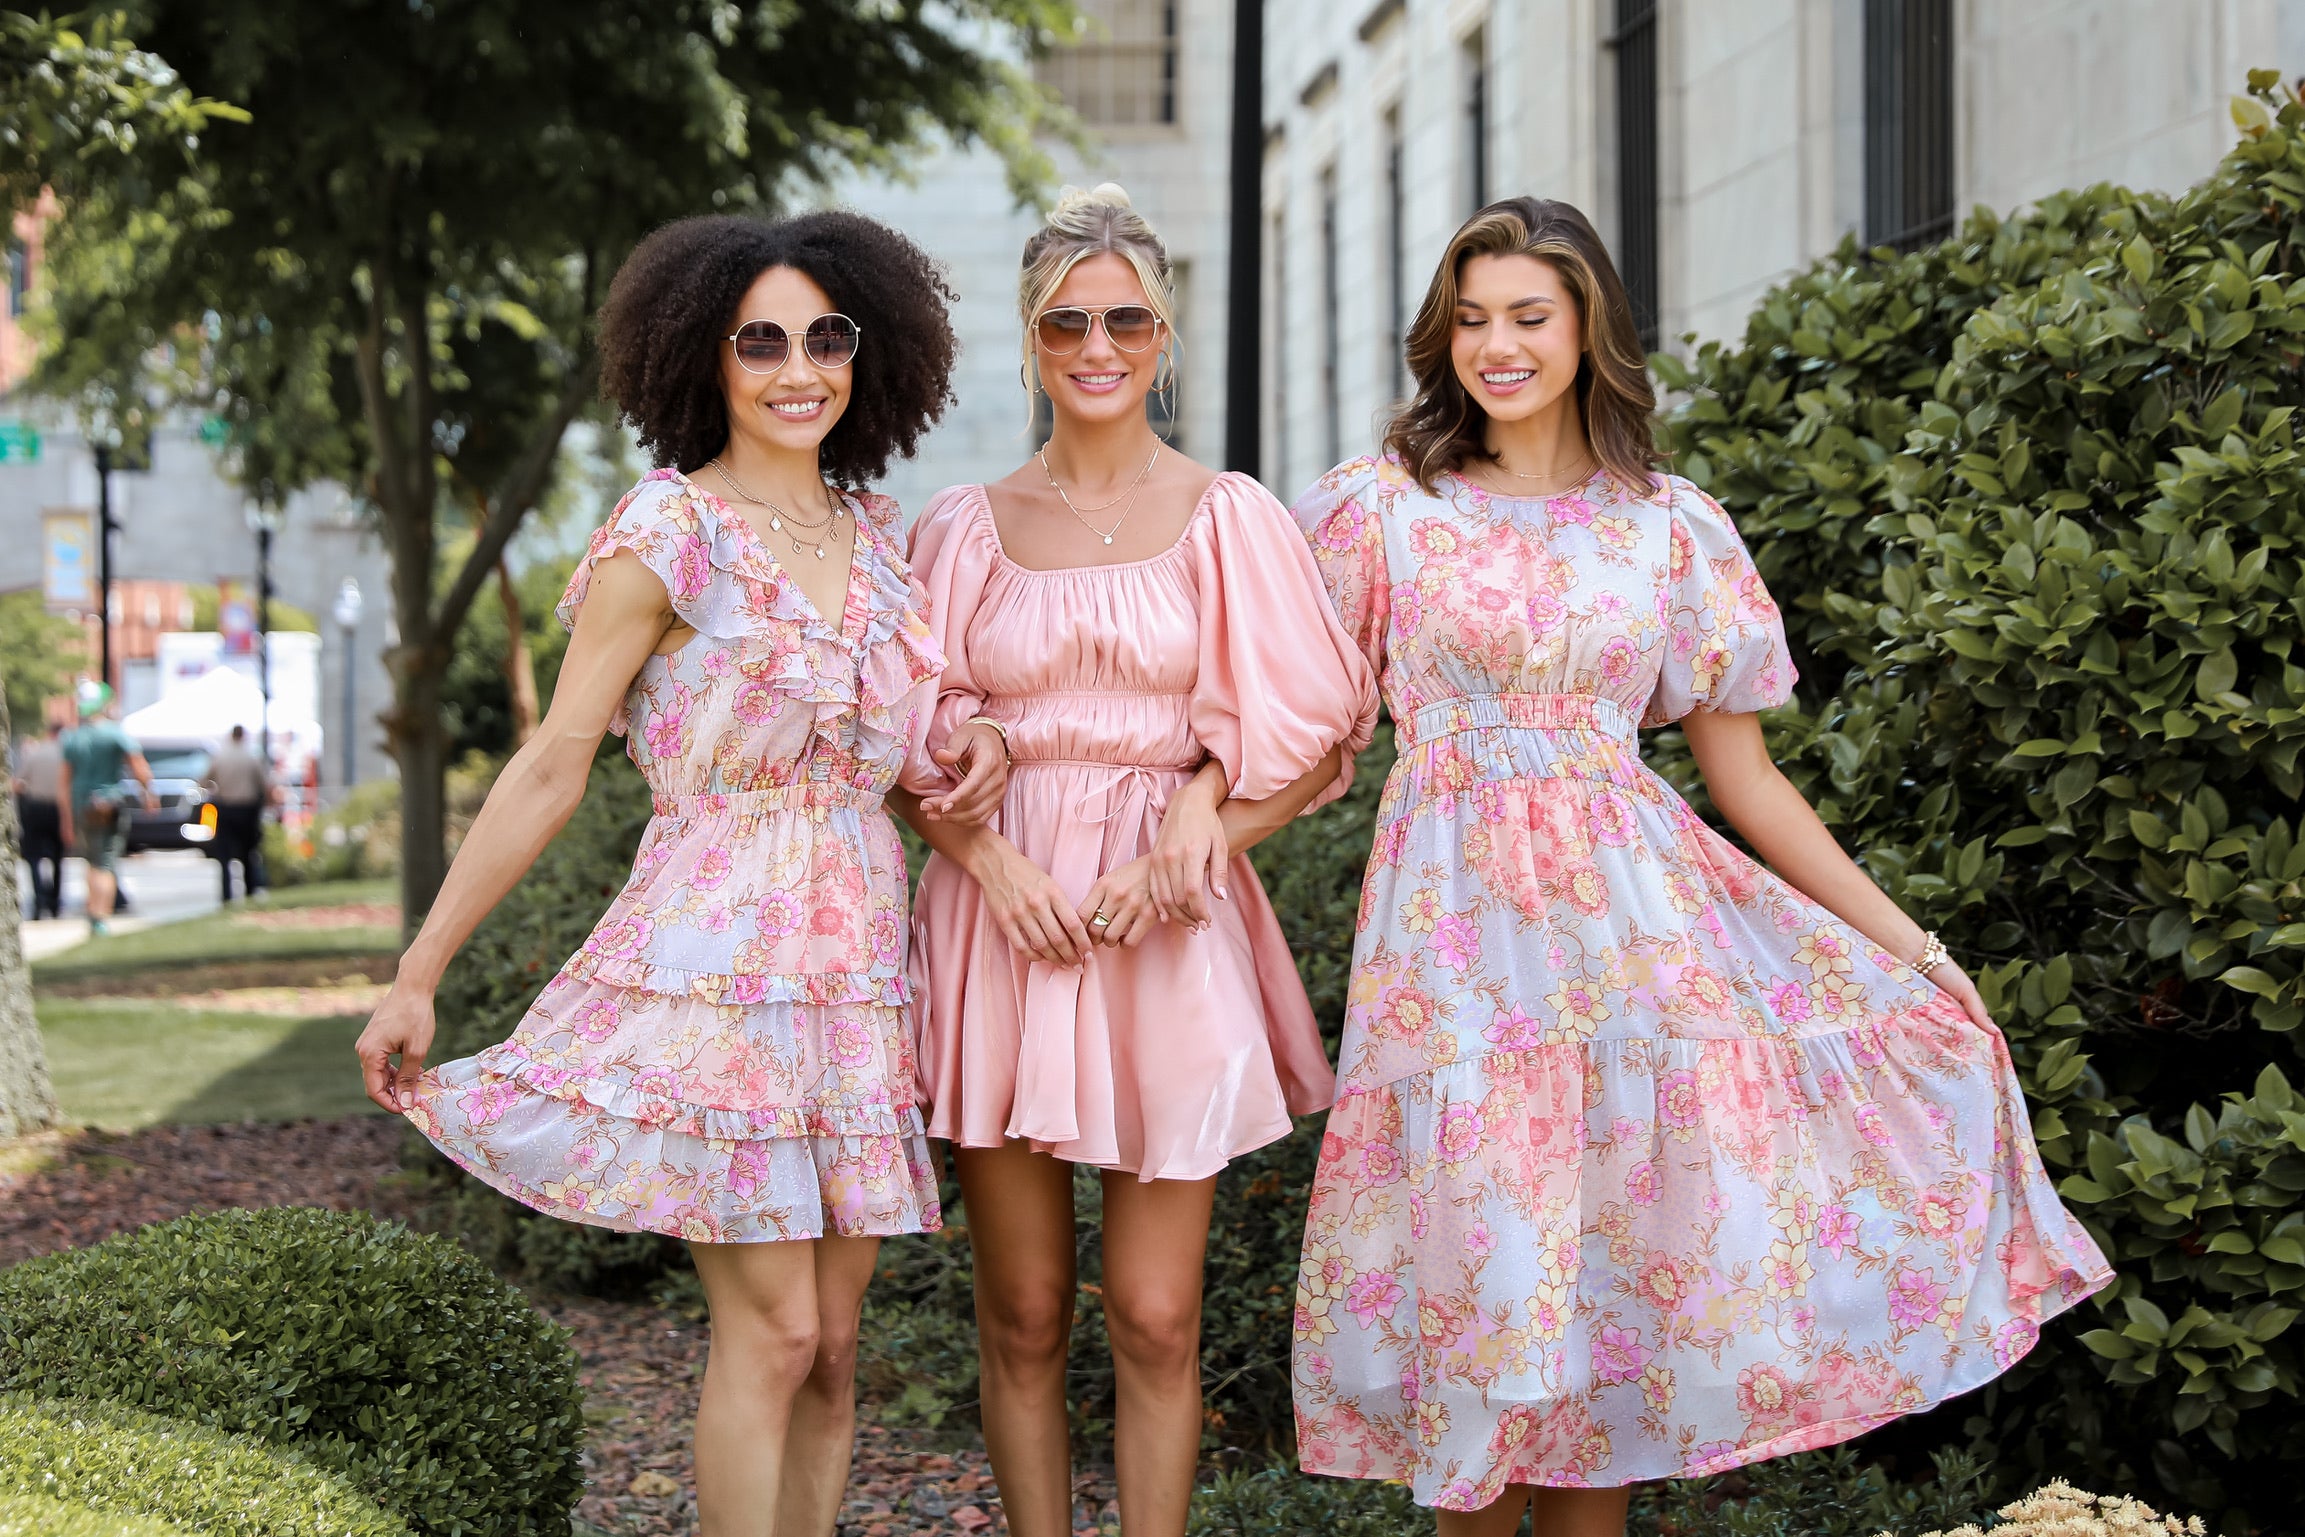 models wearing floral dresses